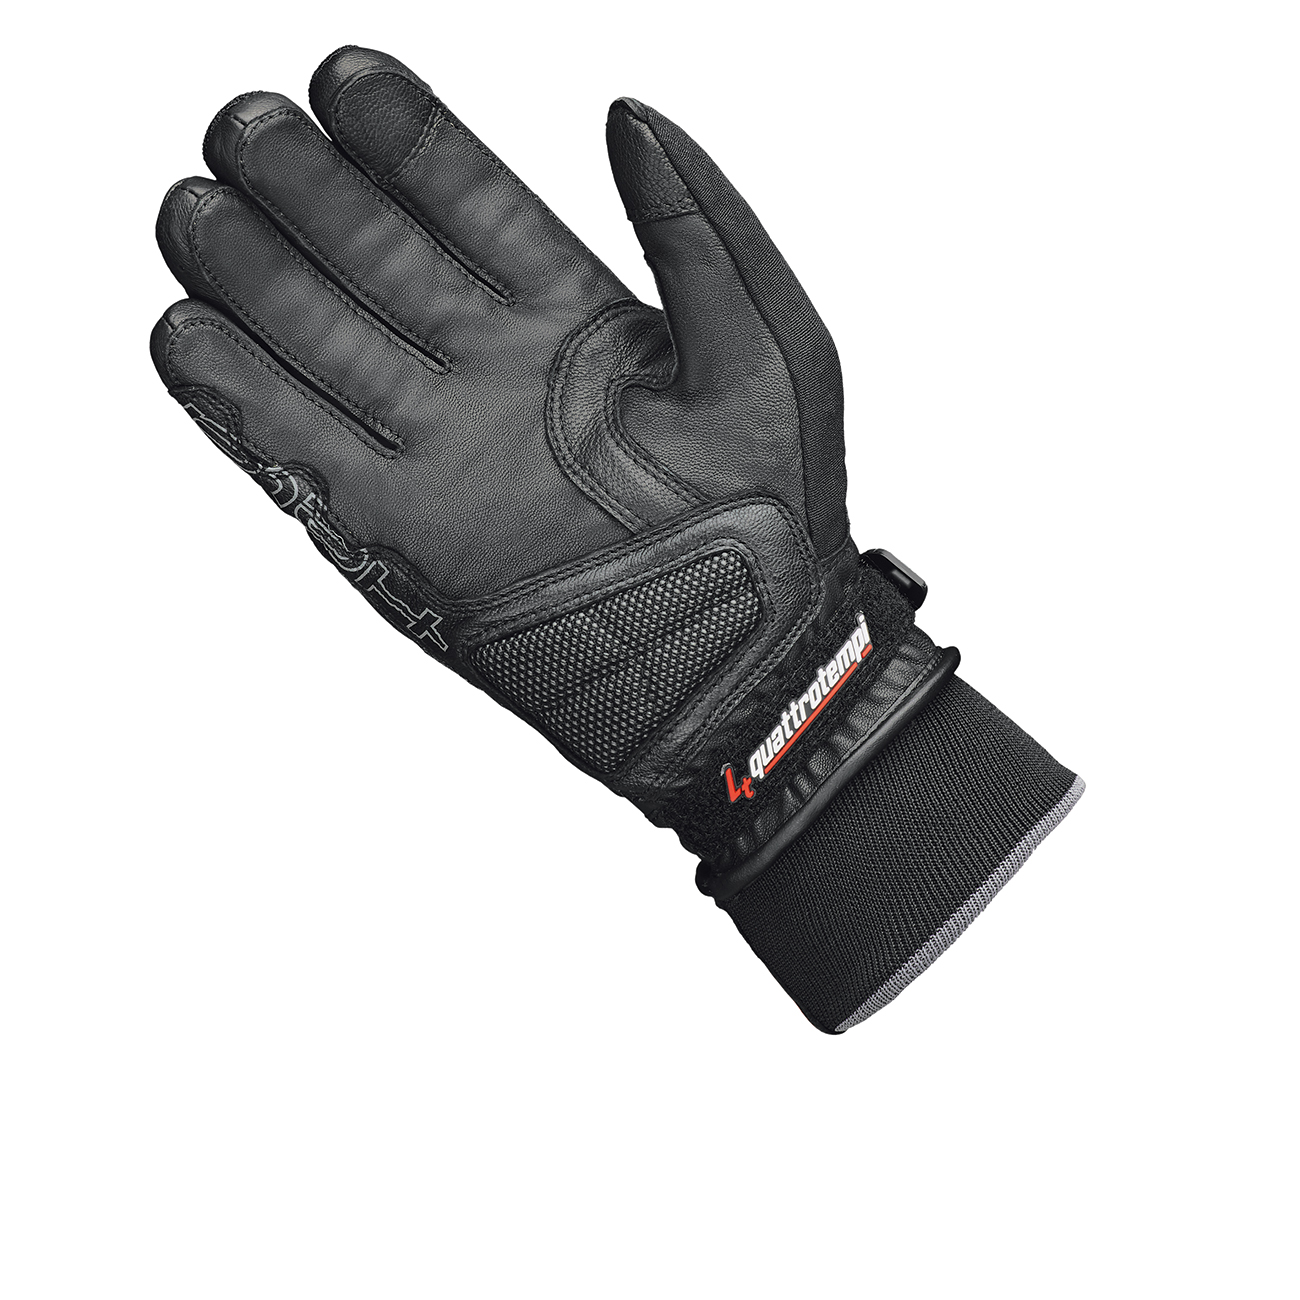 Score KTC Gore-Tex glove